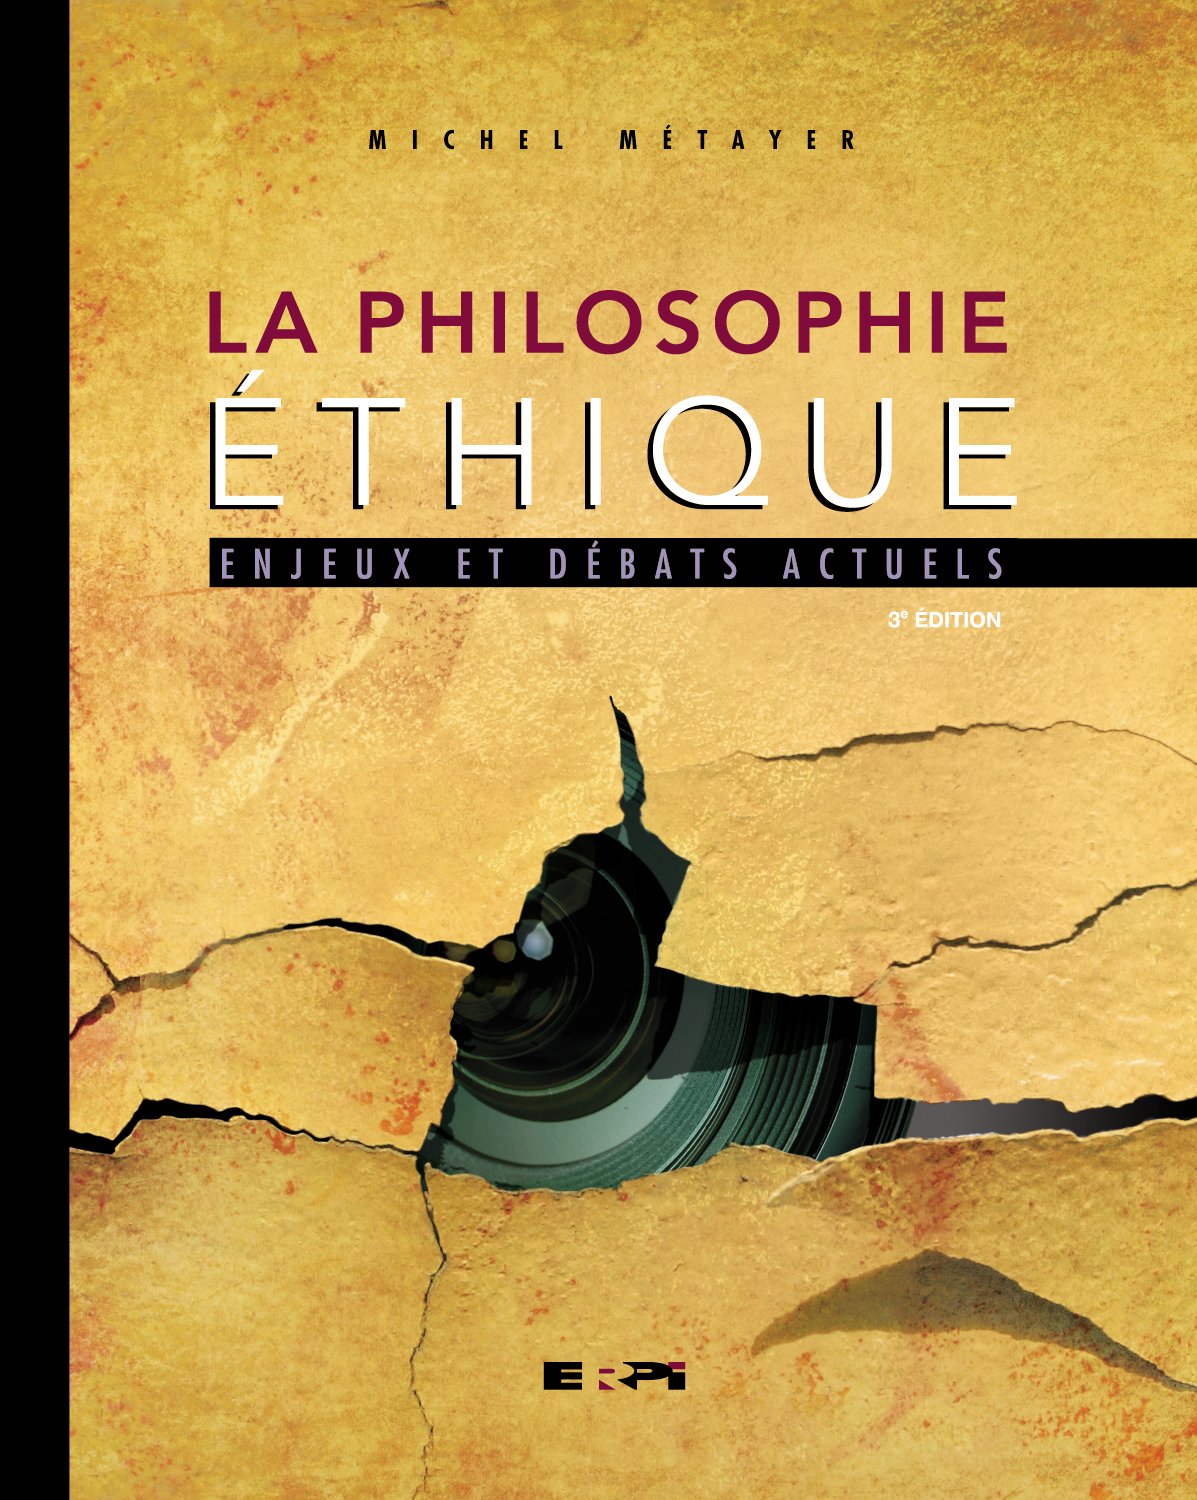 Livre ISBN 2761323246 La philosophie éthique : enjeux et débats (3e édition) (Michel Métayer)